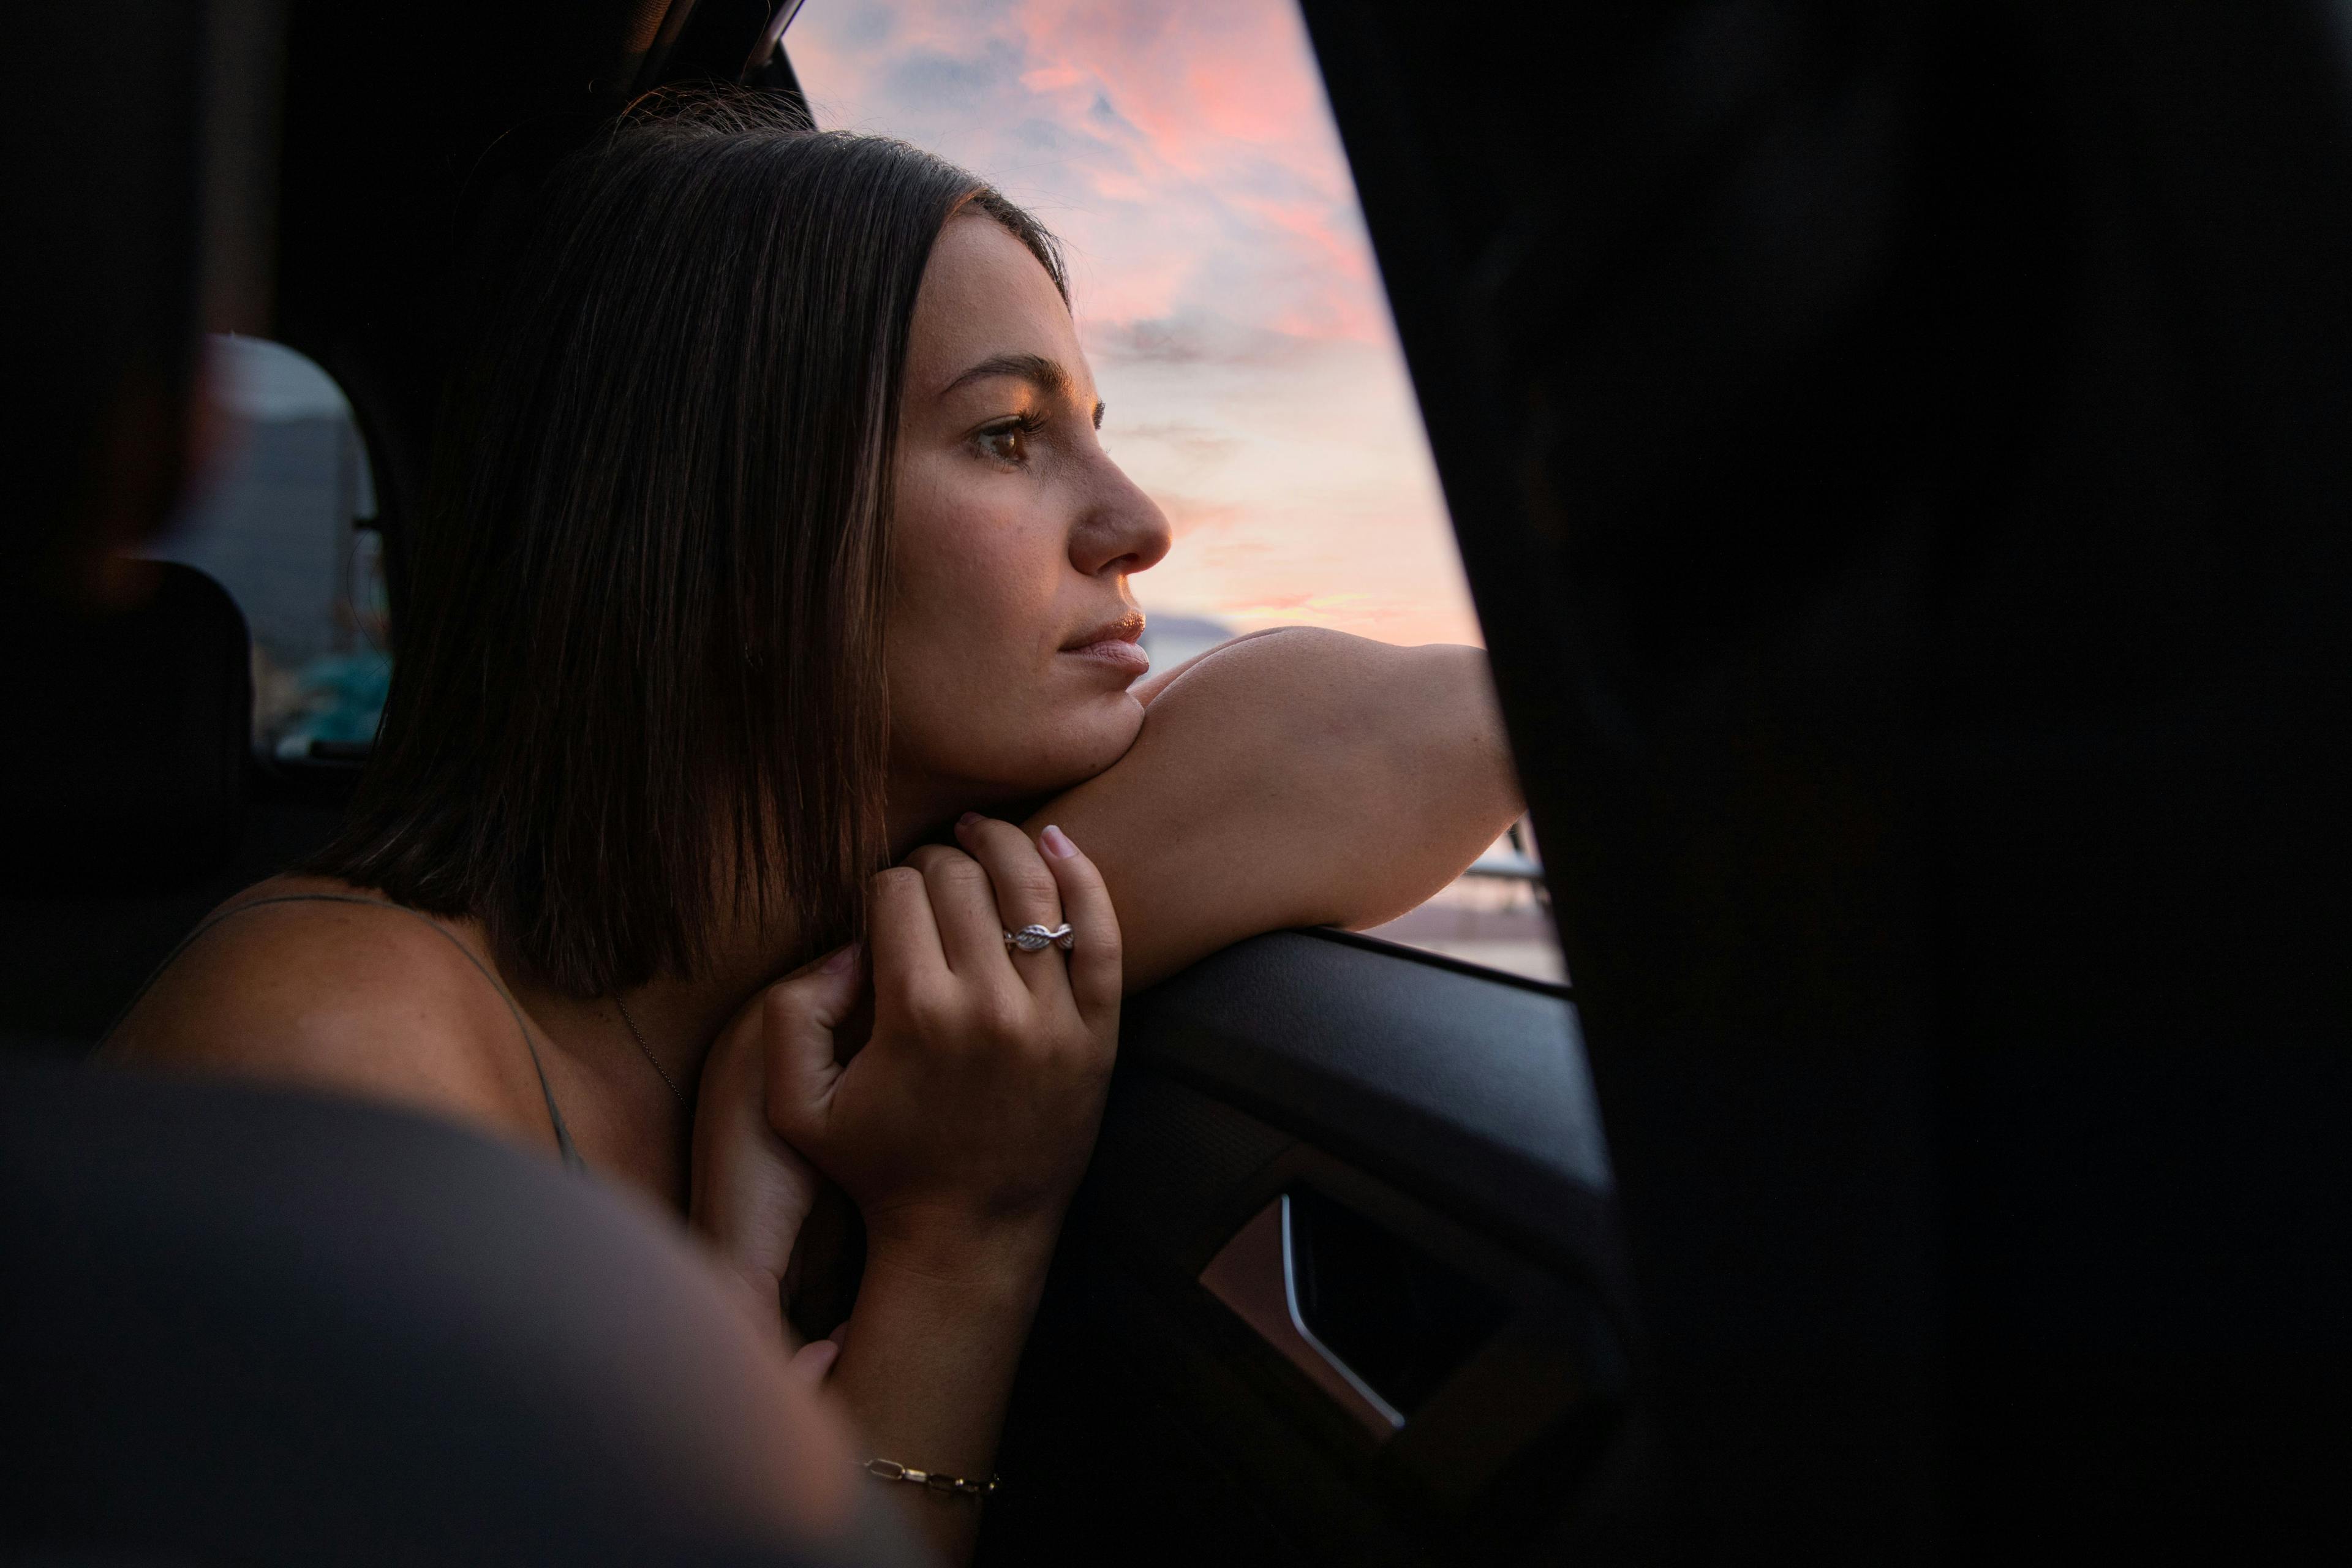 Femme qui regarde à la fenêtre d'une voiture